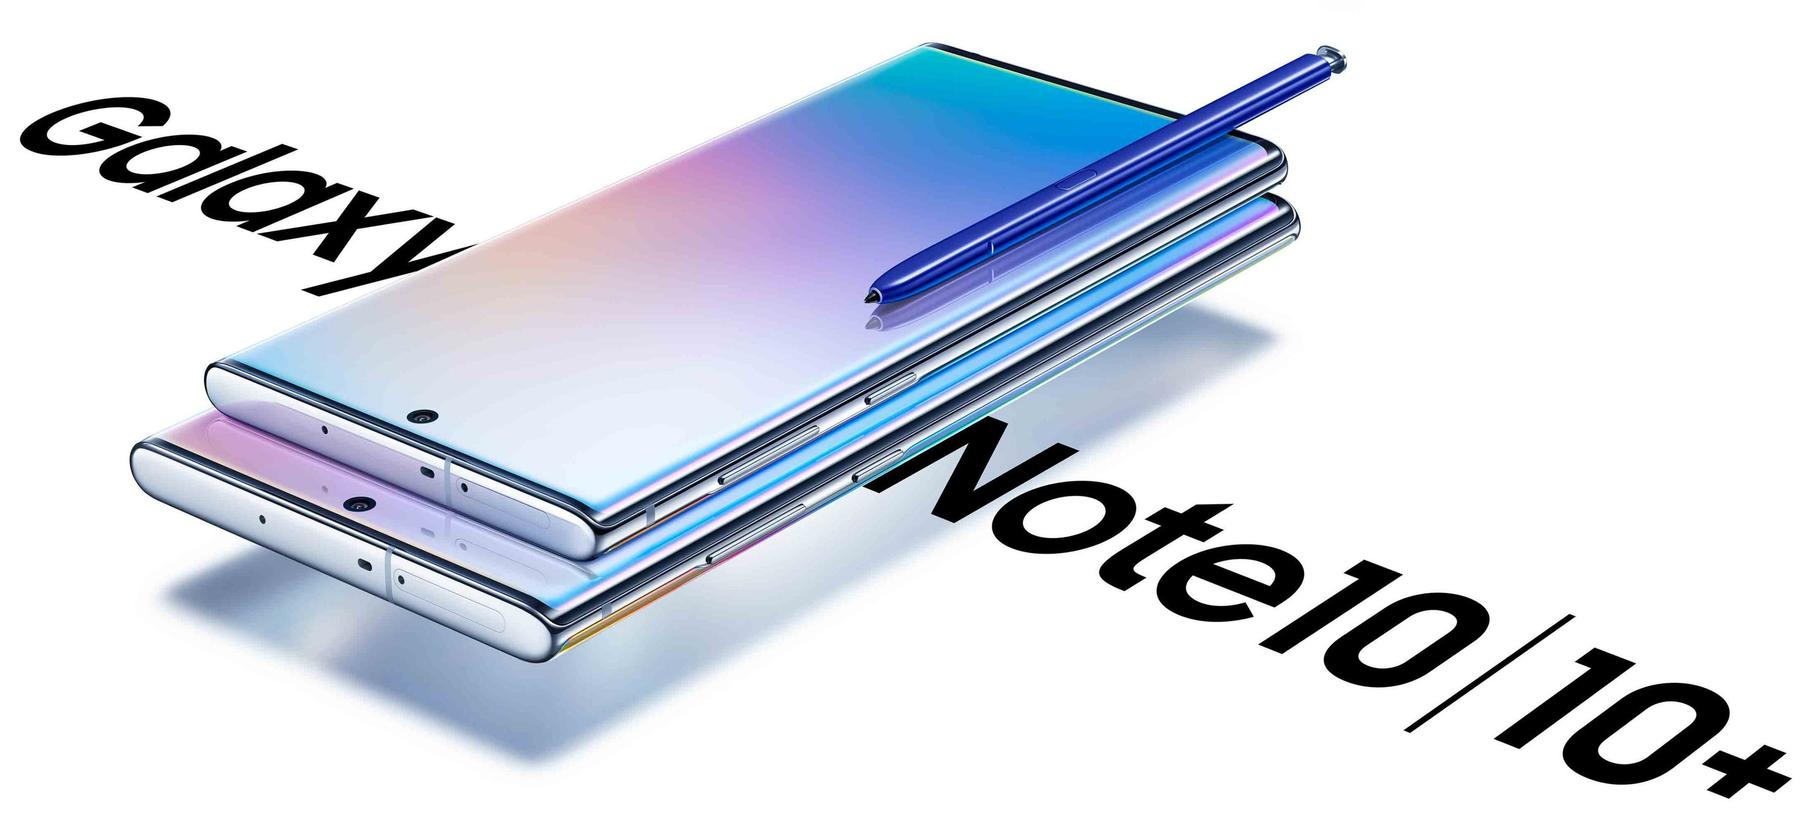 Samsung представил Galaxy Note 10 и Note 10+. Сколько будет стоить в России?